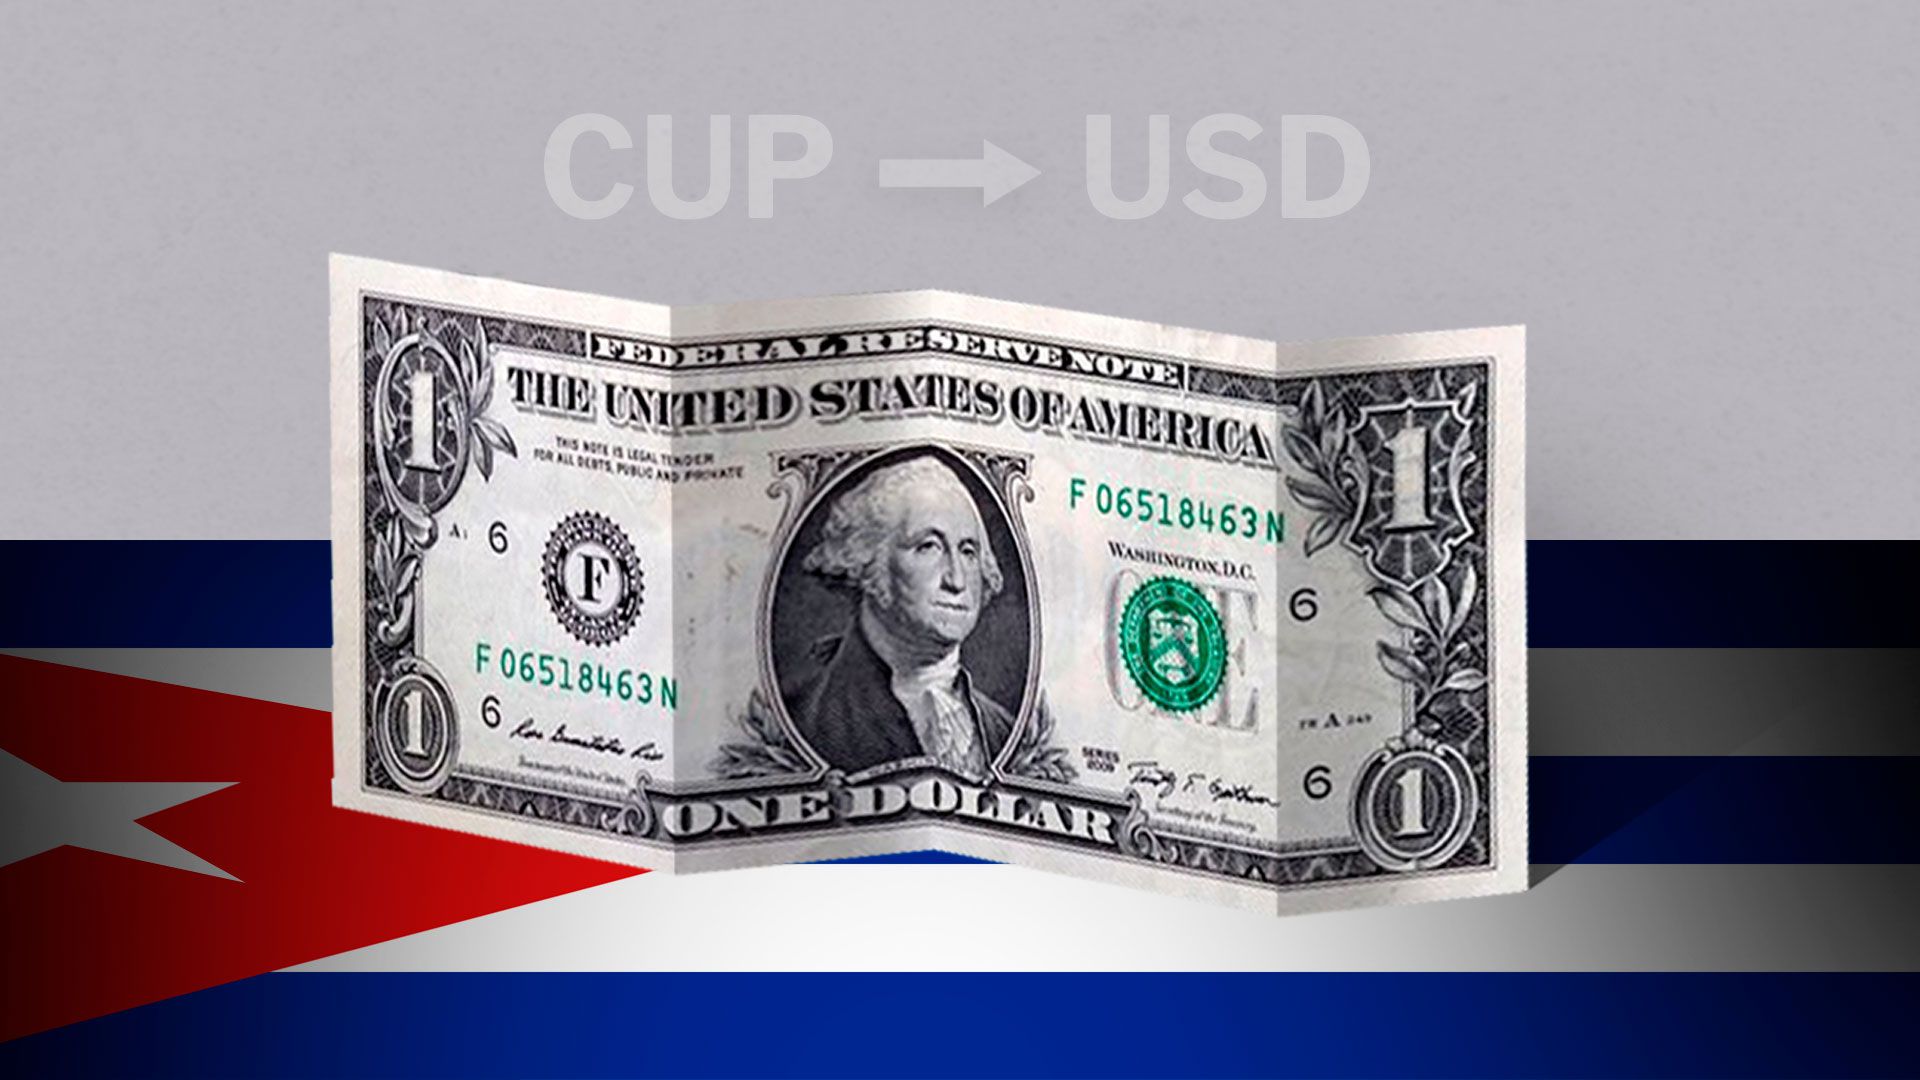 Cuba: cotización de apertura del dólar hoy 24 de marzo de USD a CUP